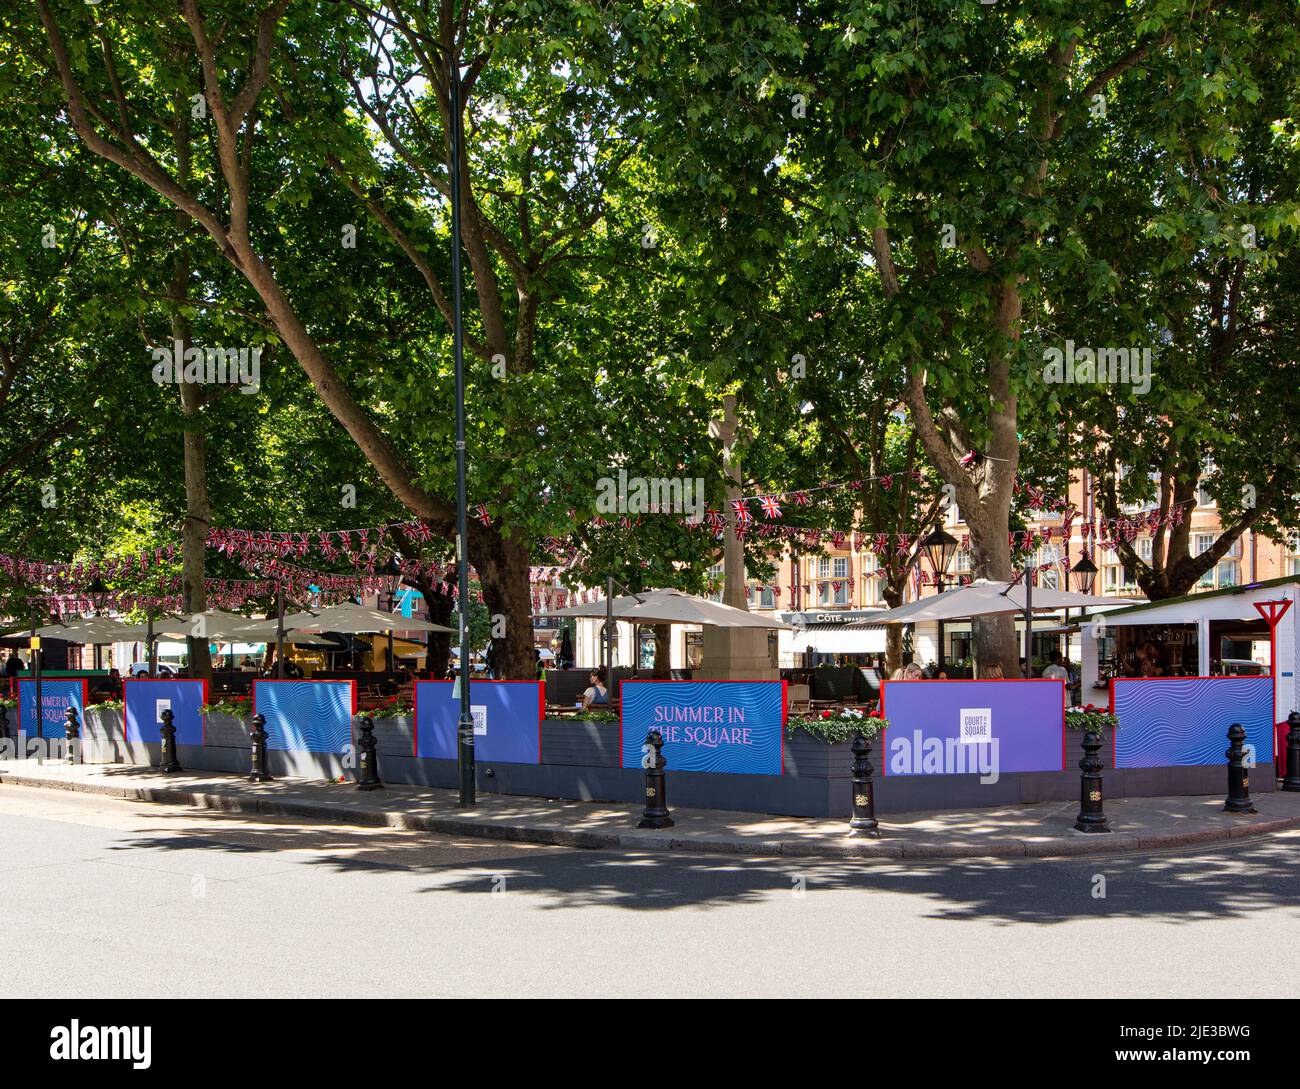 Sloane Square, Chelsea, London, Sommer 2022; Banner für Feierlichkeiten in der Mitte des von Bäumen gesäumten Platzes Stockfoto